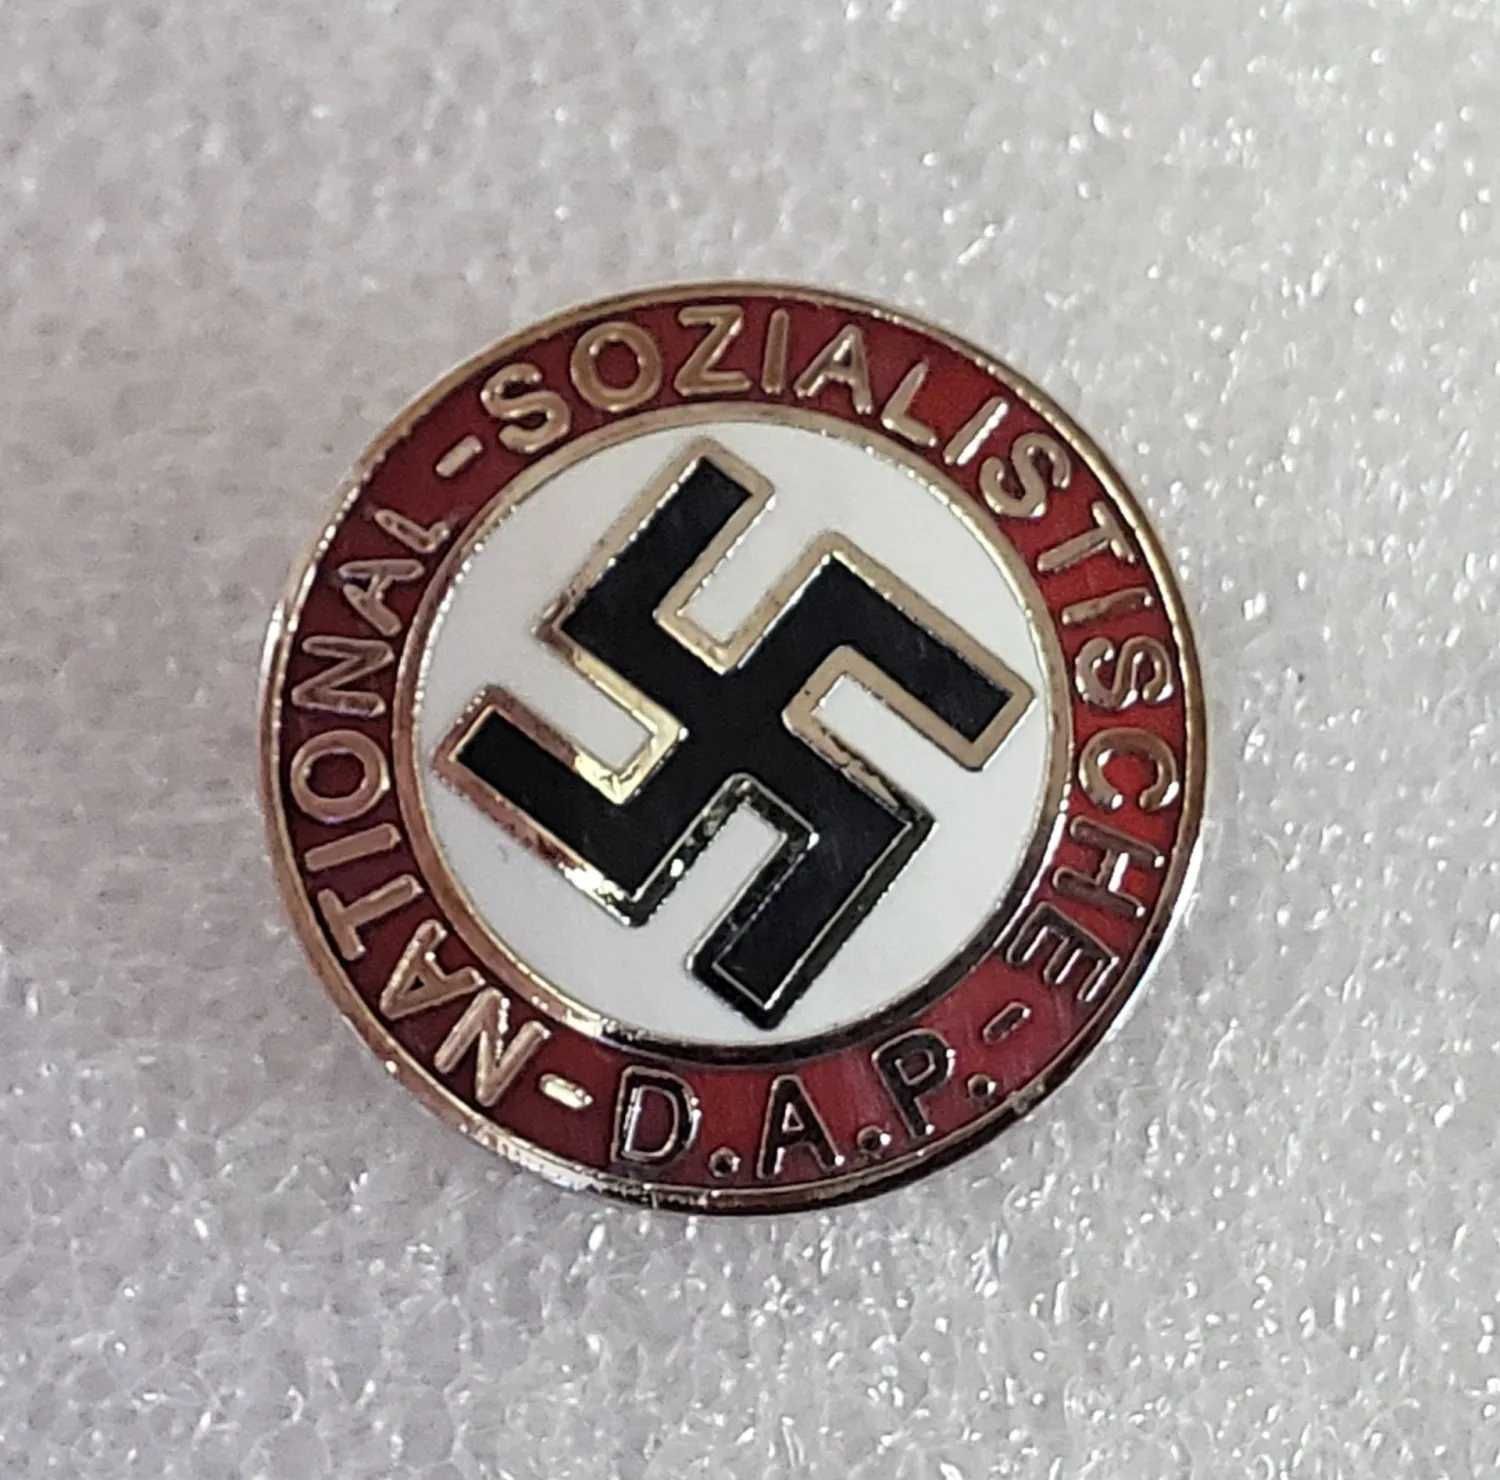 Значки NSDAP золотой партийный  и другие 3 рейх